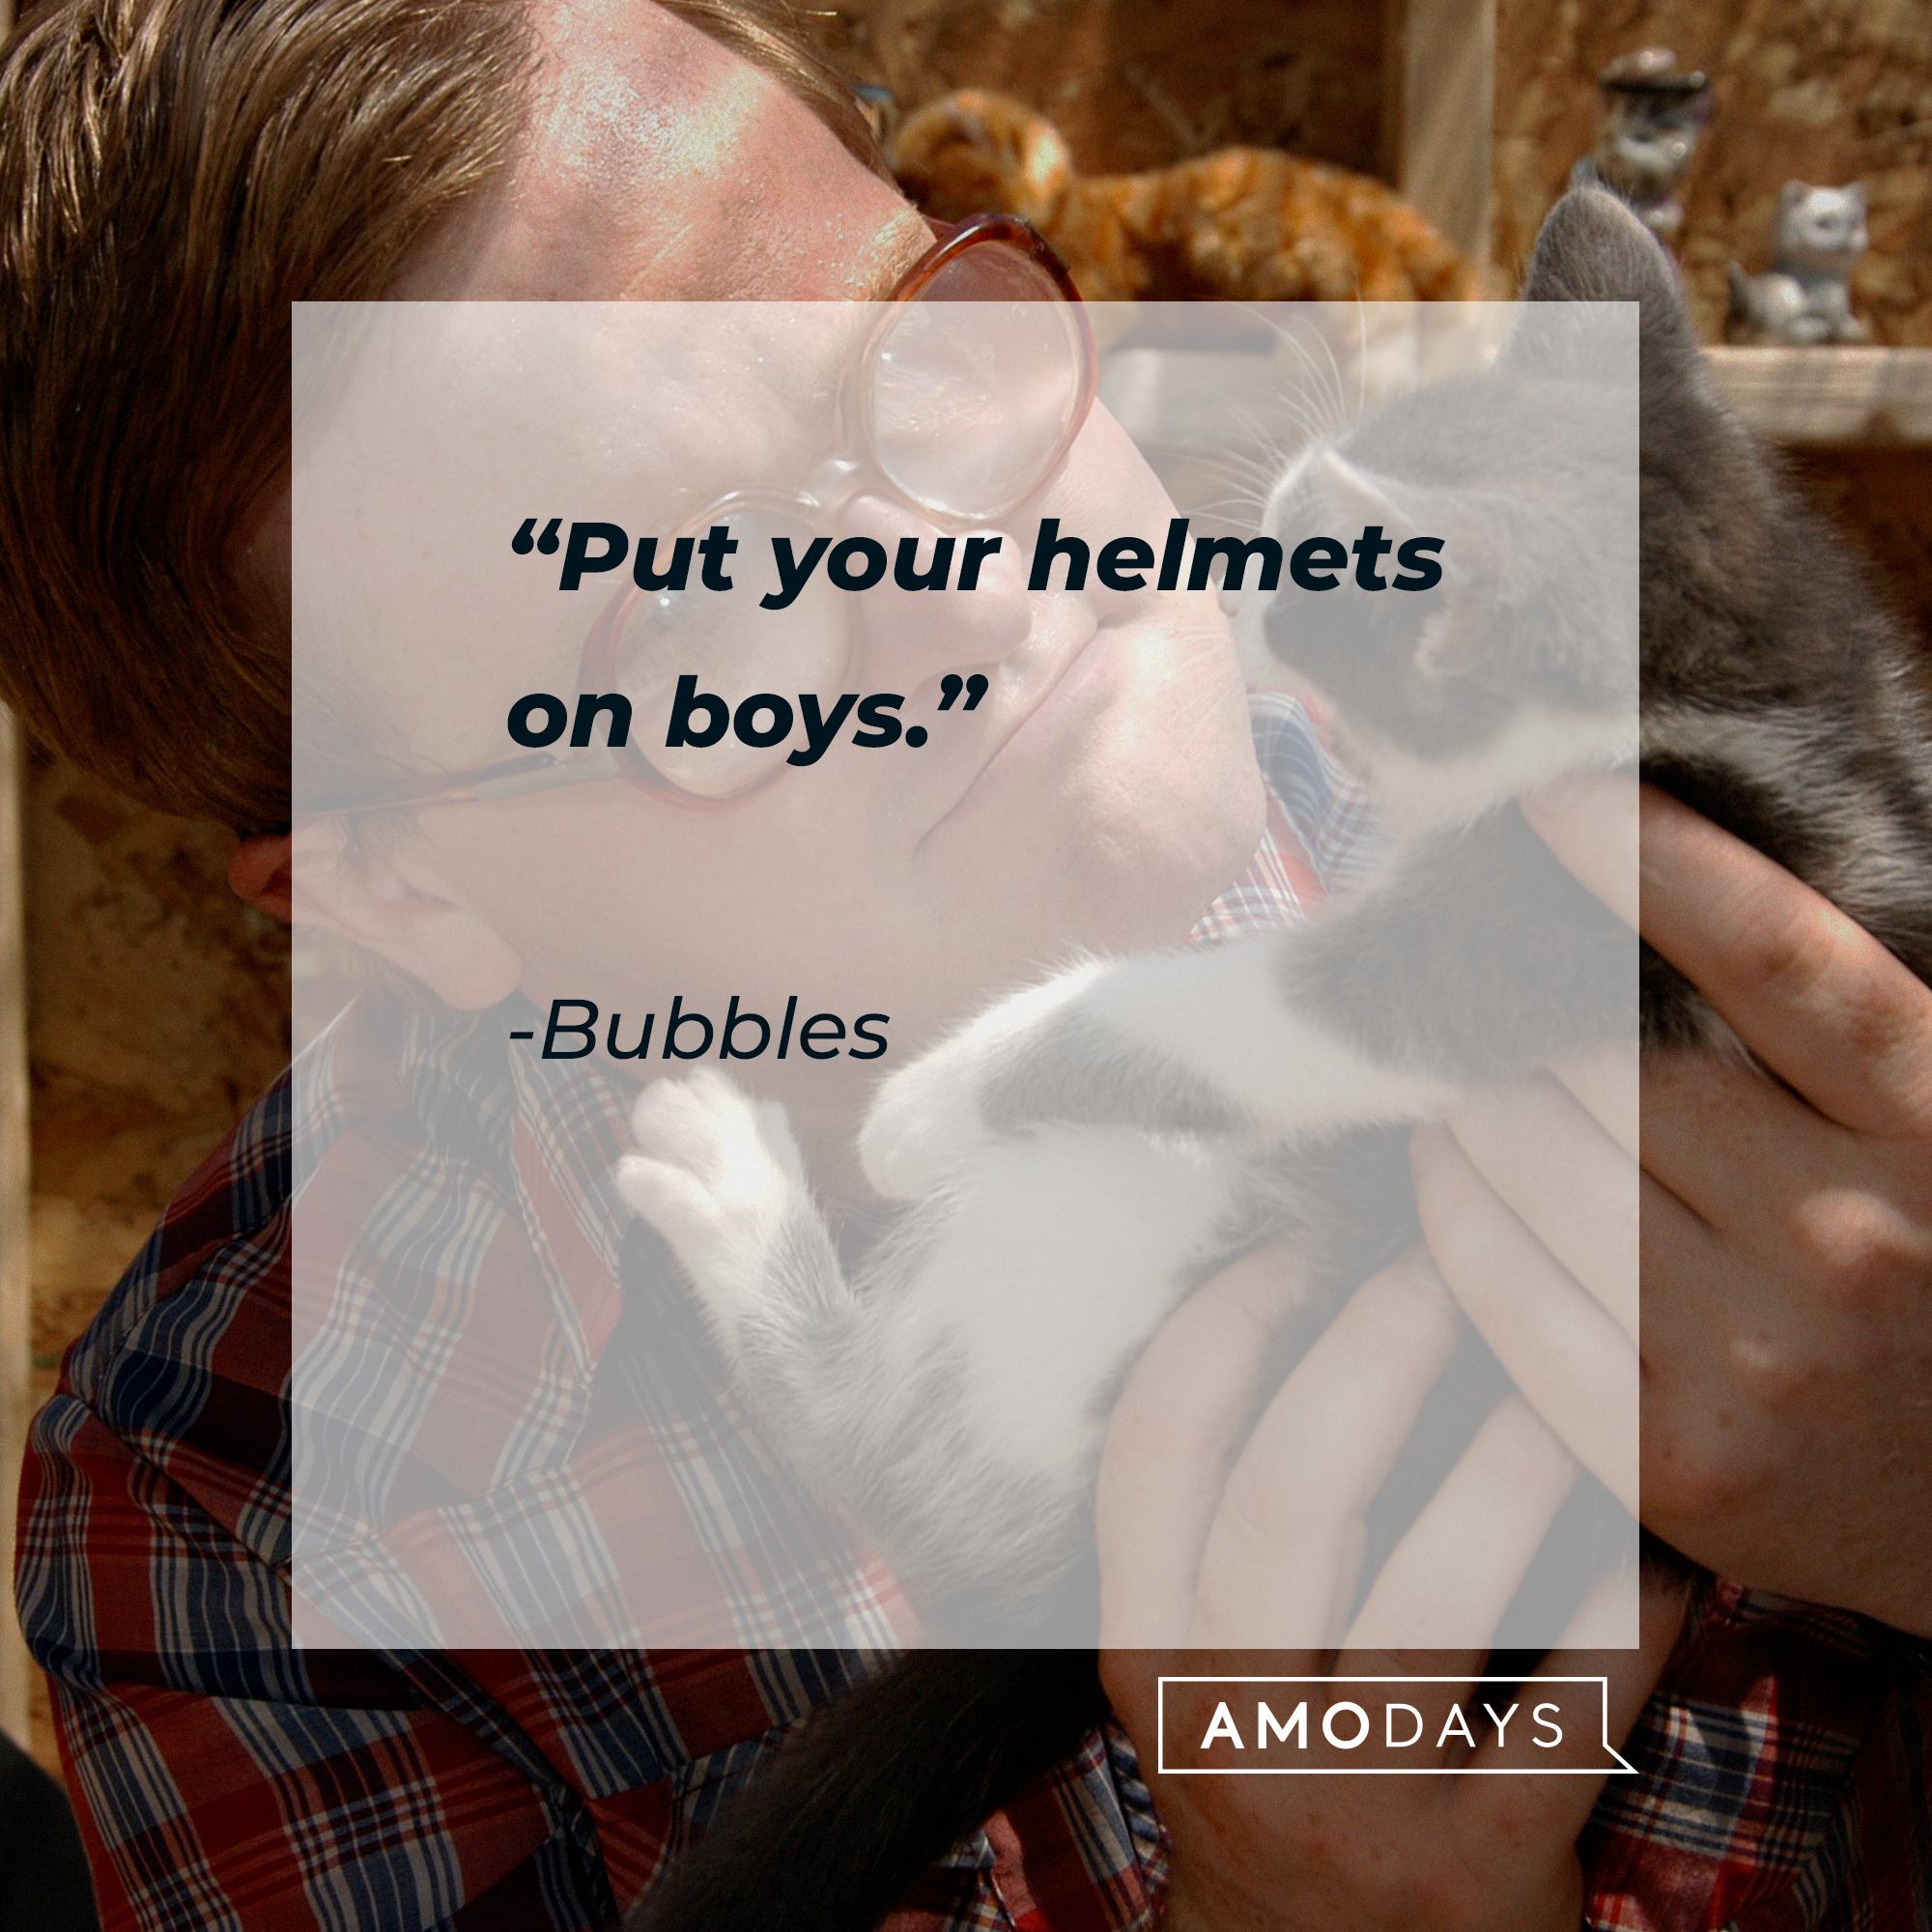 Bubbles's quote: “Put your helmets on boys.” | Source: facebook.com/trailerparkboys